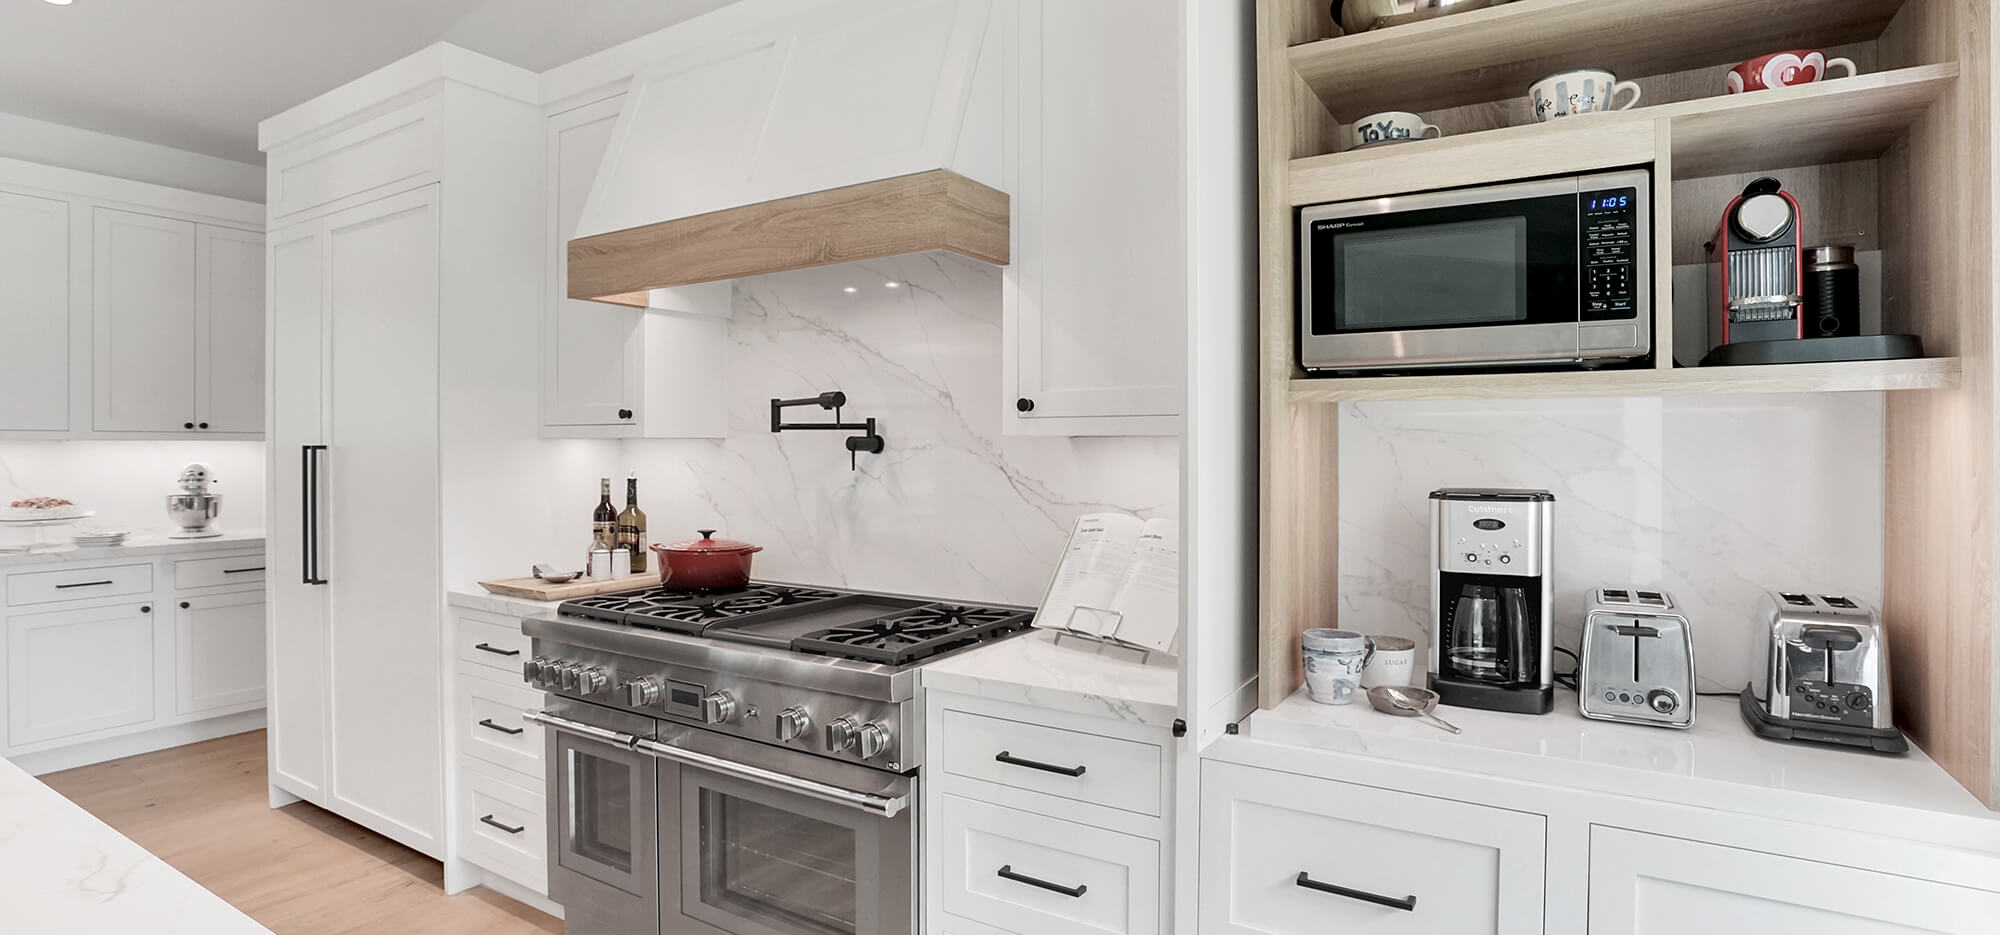 A trendy kitchen design with creative kitchen storage for kitchen appliances.